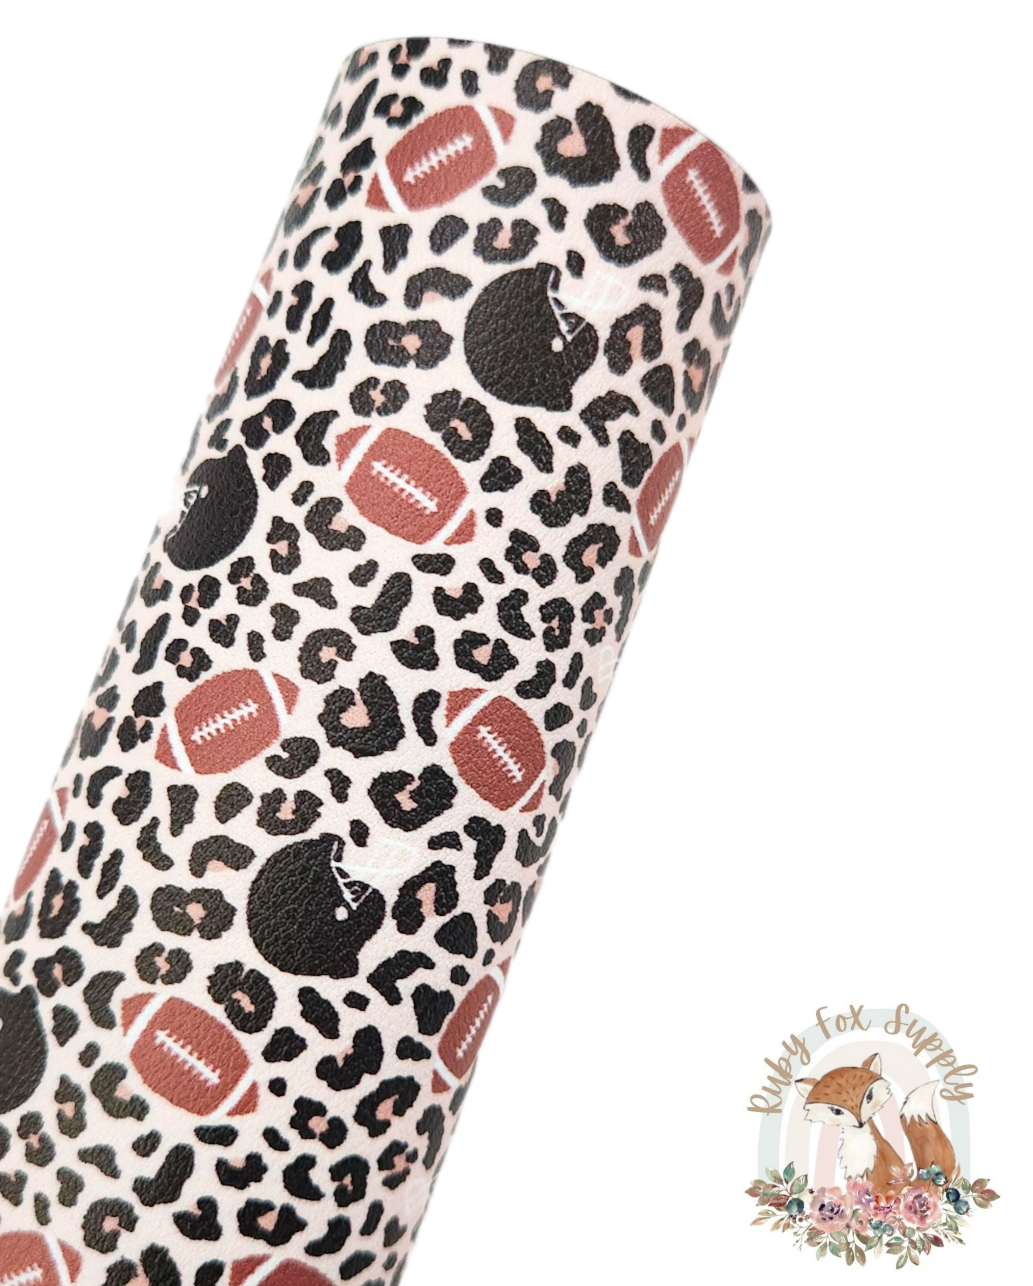 Football Cheetah 9x12 faux leather sheet